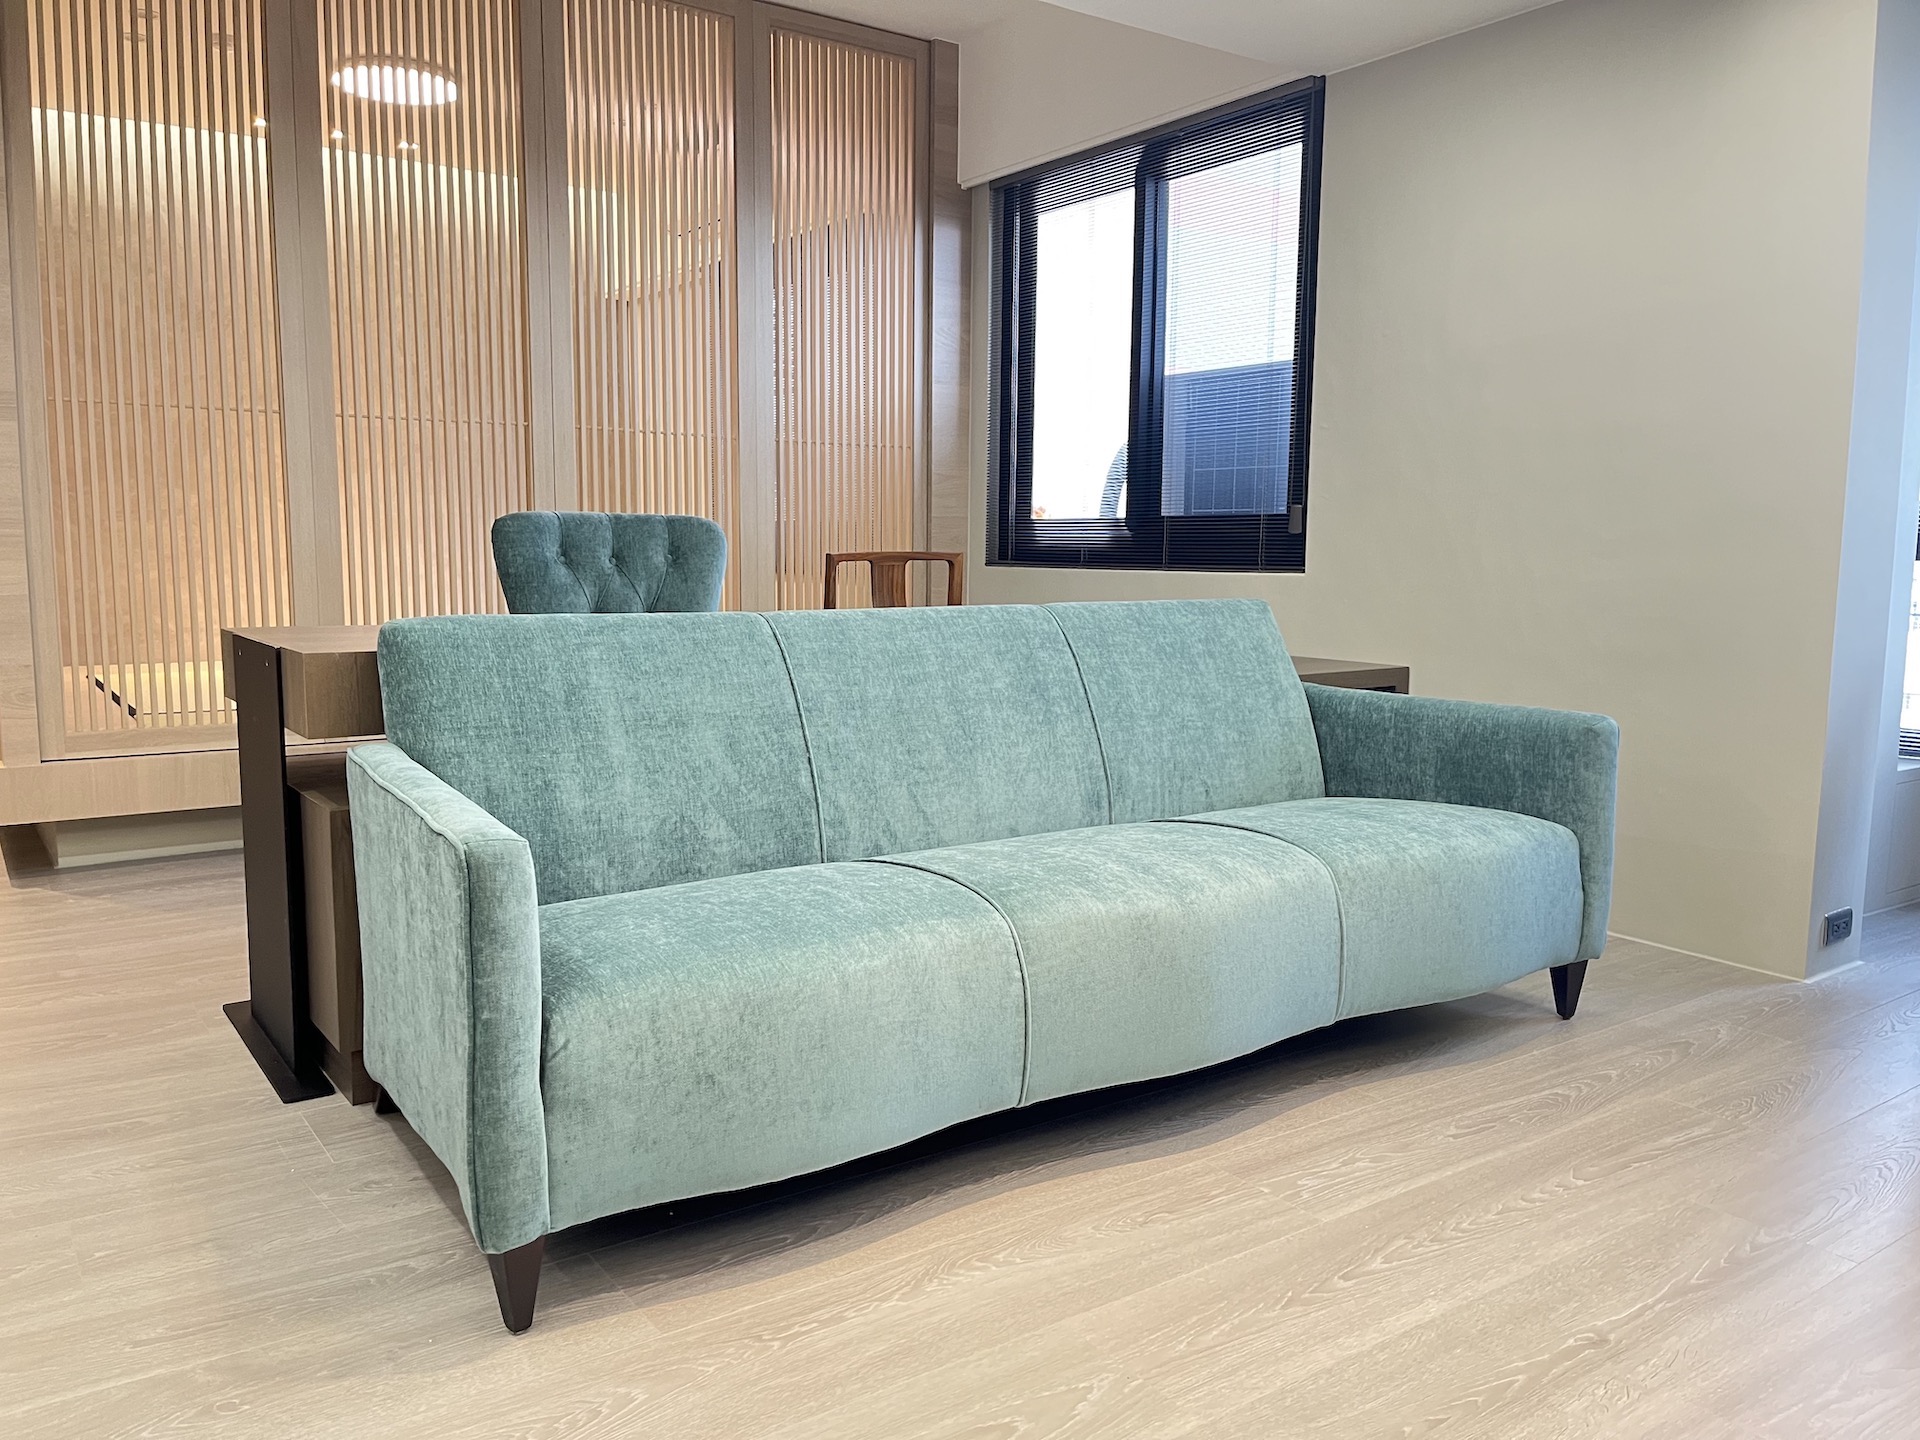 【客戶案例分享】嘉義東區三人座沙發換布翻修